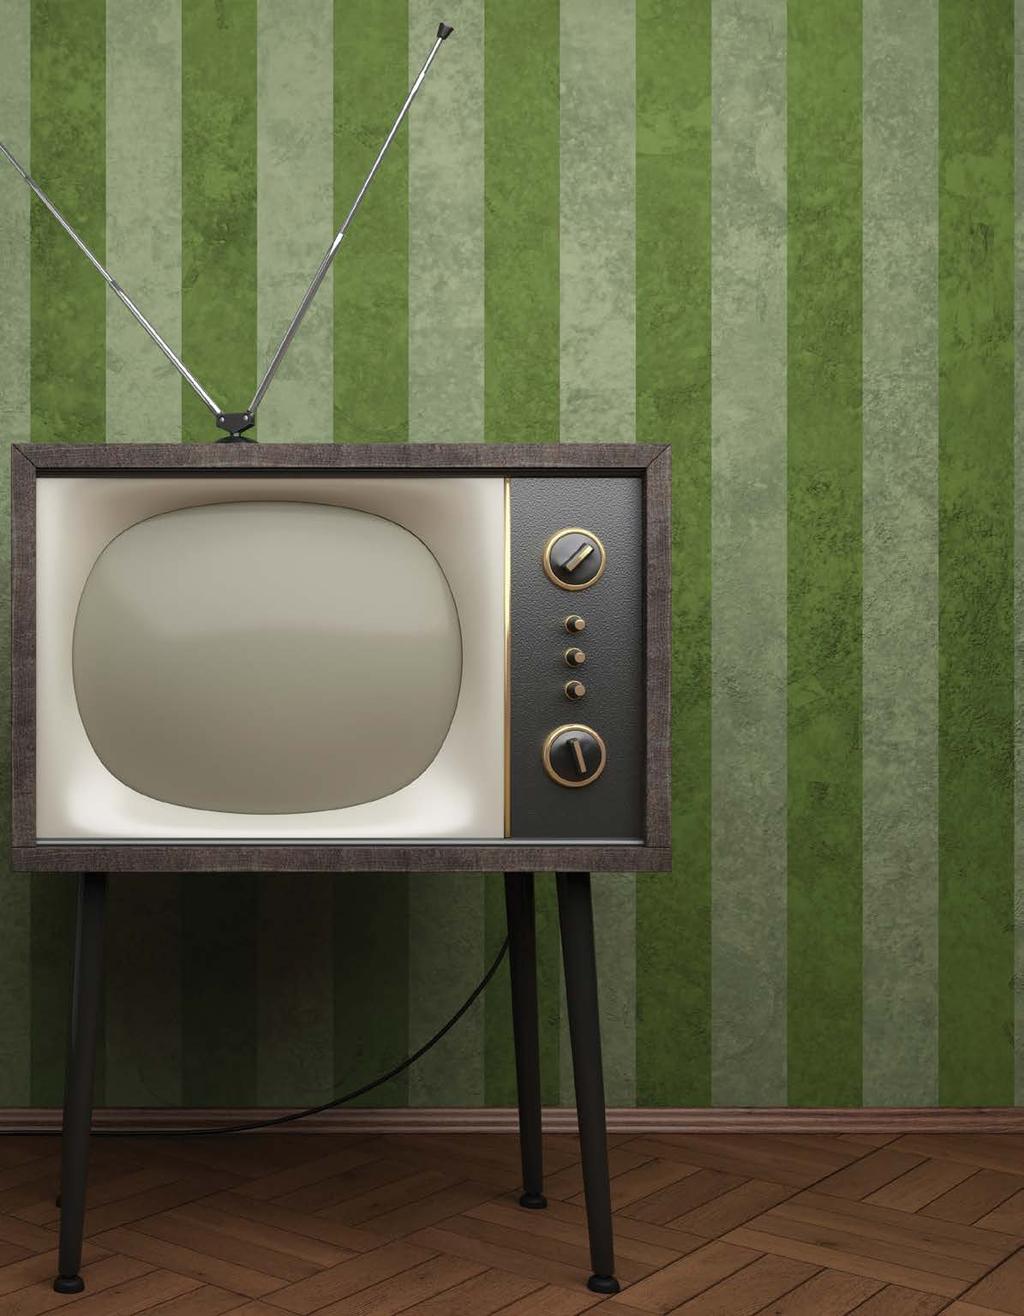 71 Evropska unija propisuje Televizori će morati da budu štedljiviji Televizori sa velikim ekranima u Evropskoj uniji moraće da budu štedljiviji kako bi odgovorili na zahtjeve energetske efikasnosti.